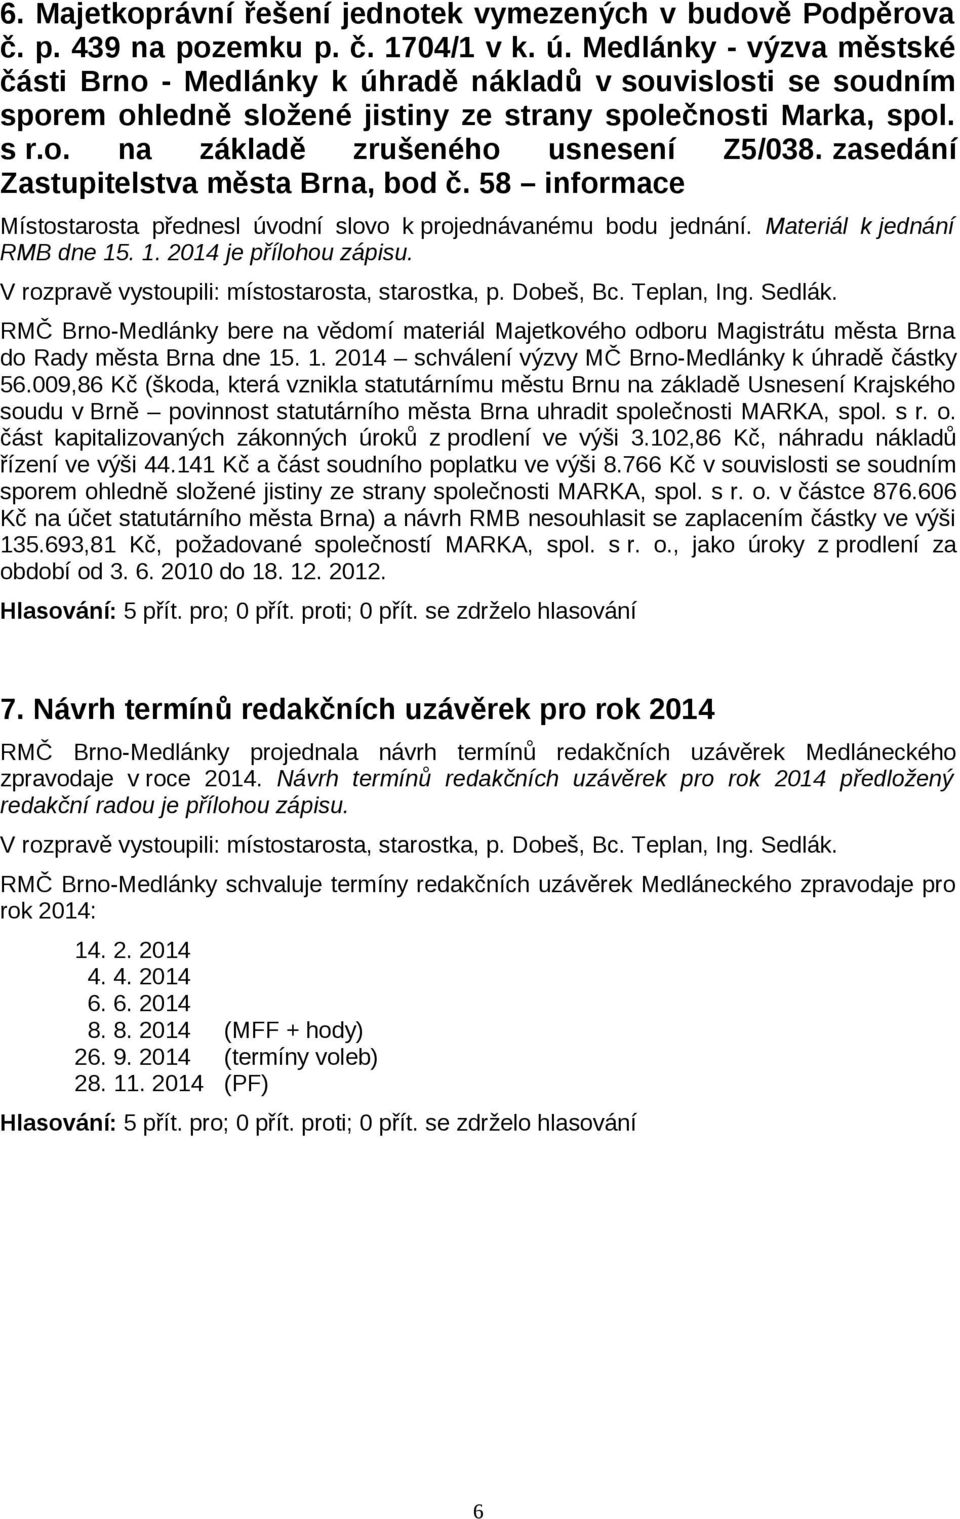 zasedání Zastupitelstva města Brna, bod č. 58 informace Místostarosta přednesl úvodní slovo k projednávanému bodu jednání. Materiál k jednání RMB dne 15. 1. 2014 je přílohou zápisu.